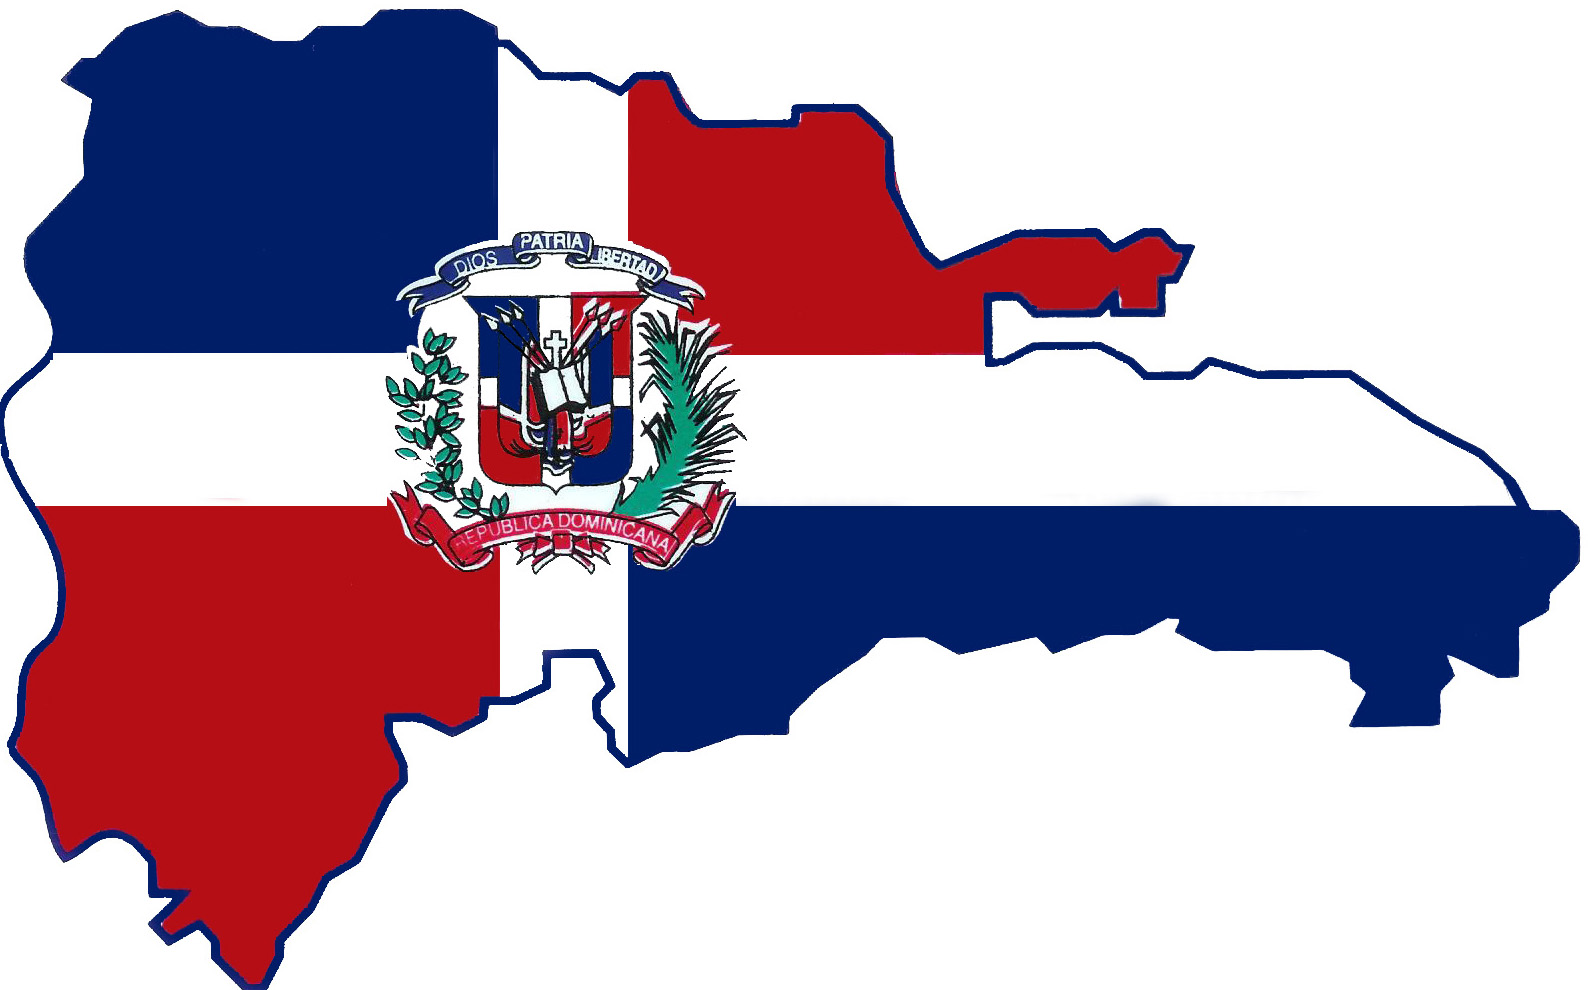 Nuesta República Dominicana